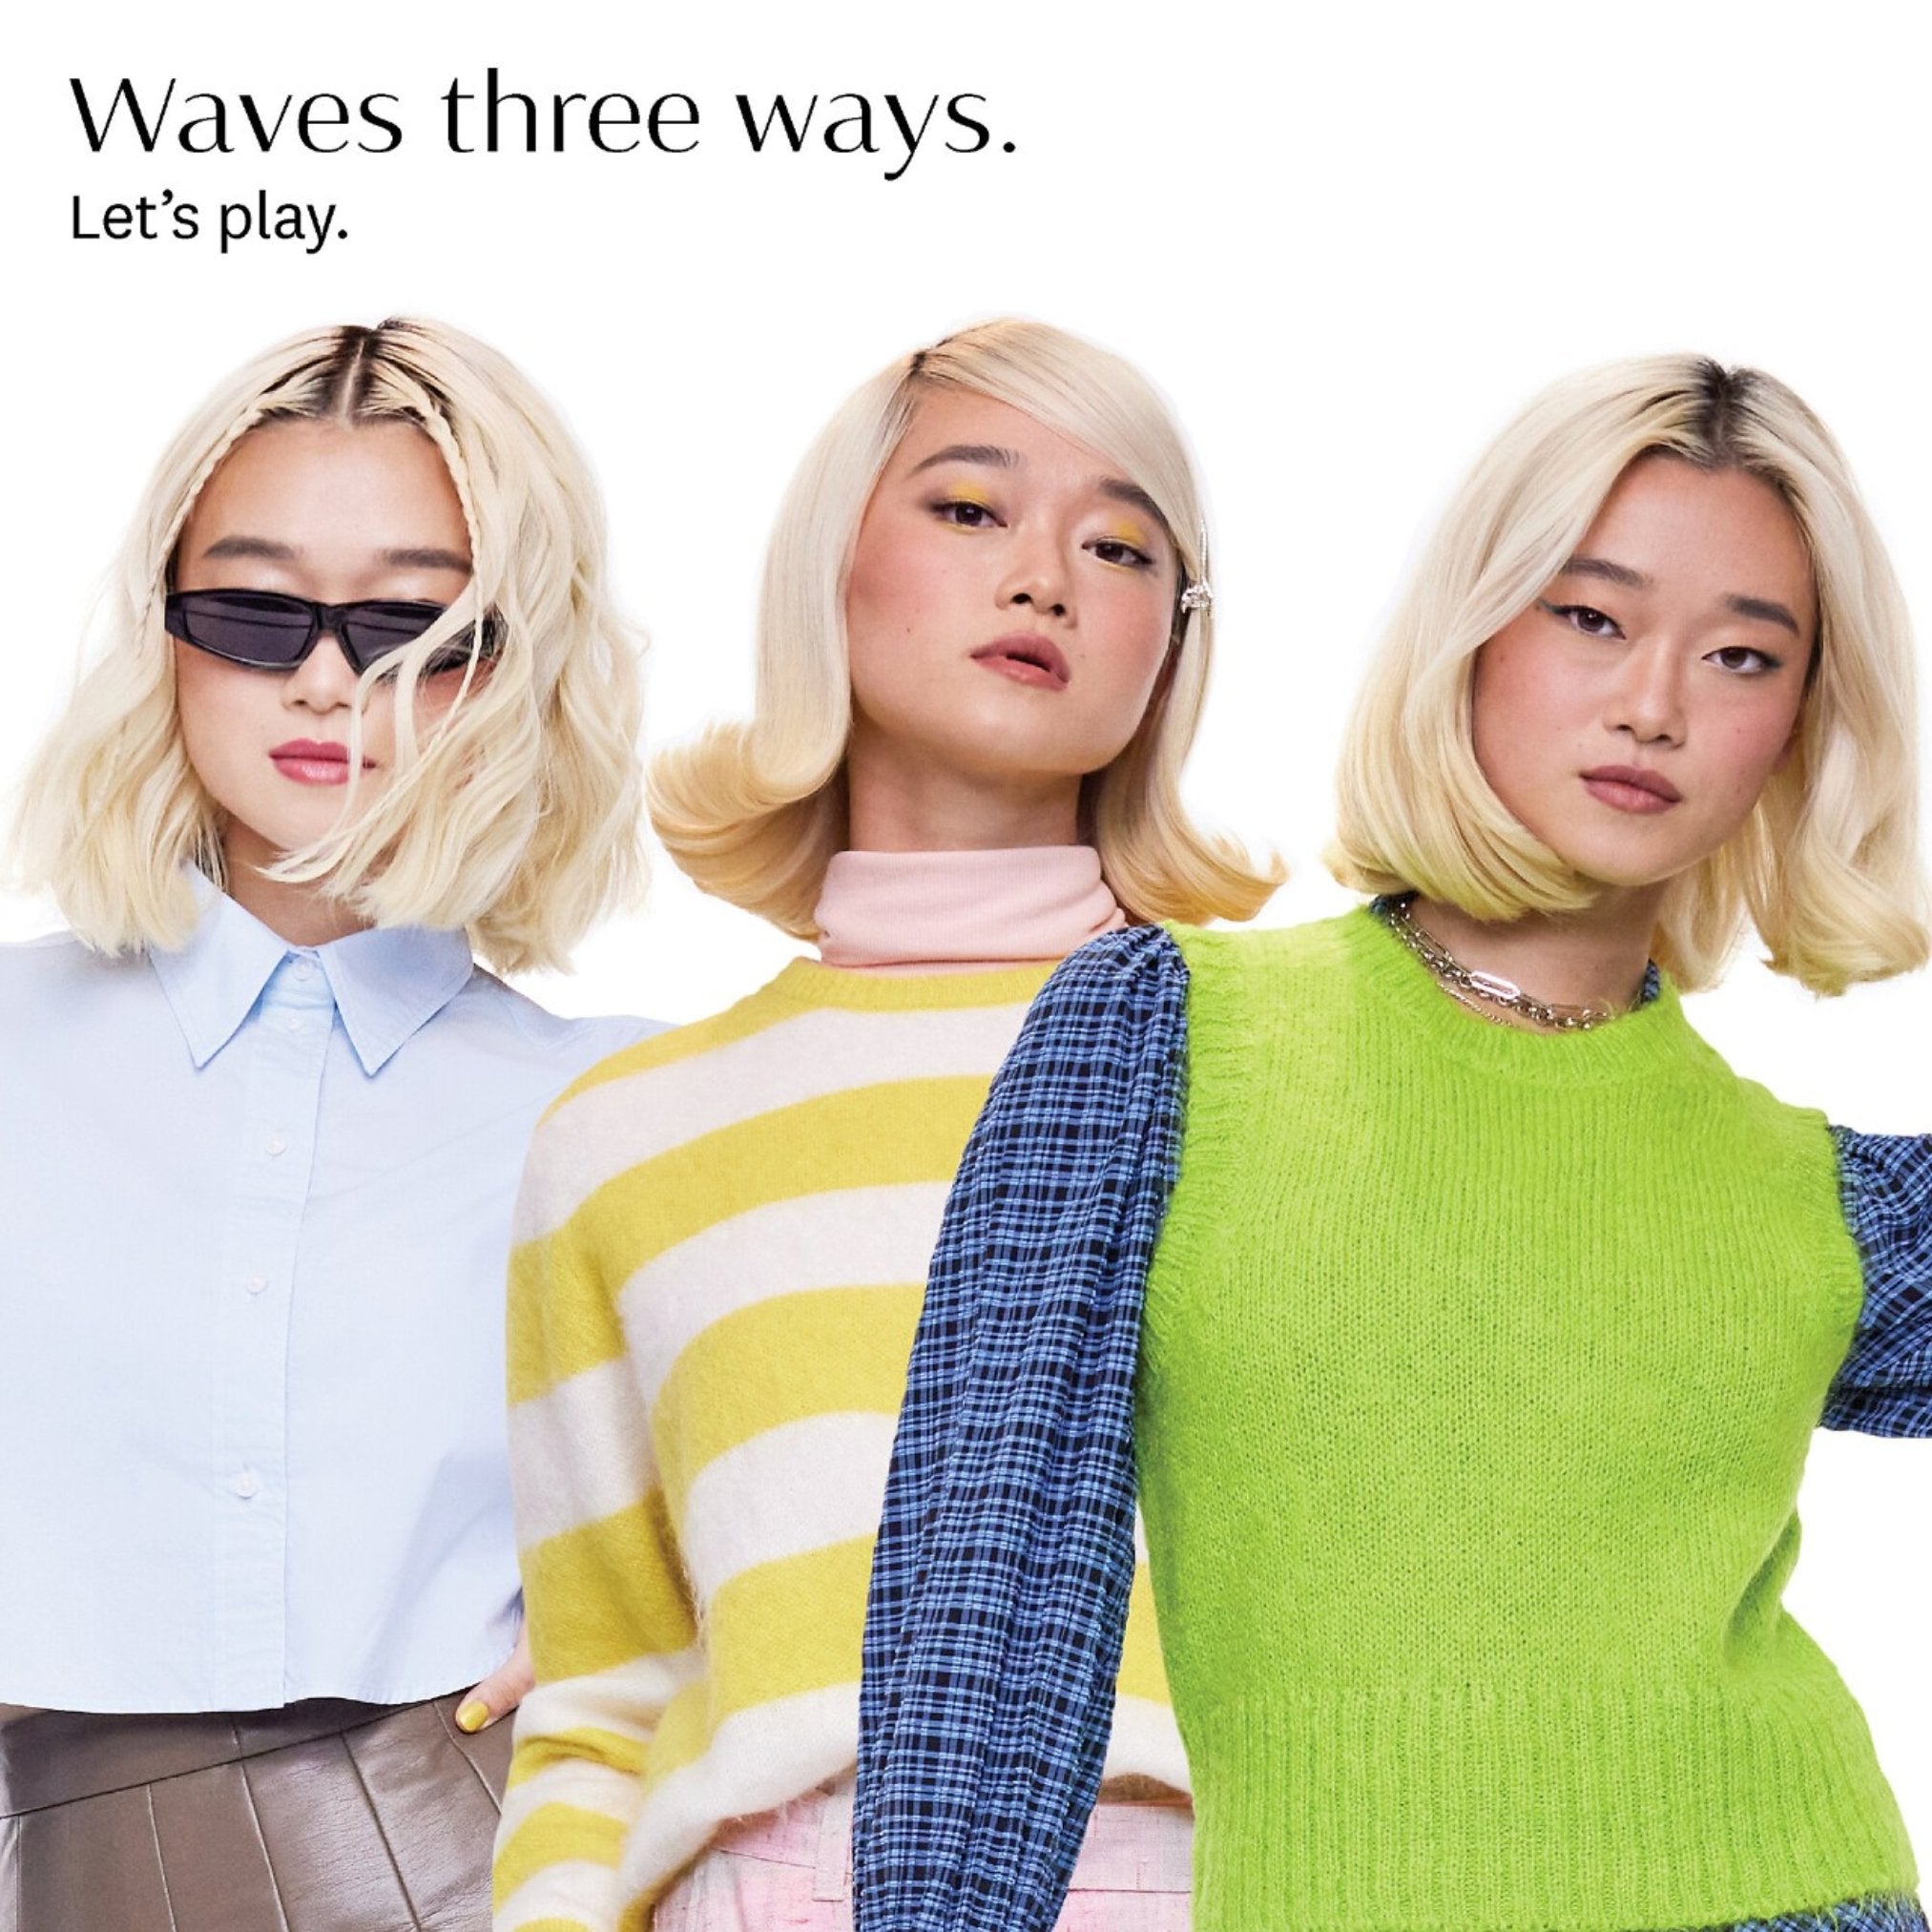 T3. Switch Kit Wave Trio Fer à friser interchangeable avec 3 barils - Concept C. Shop